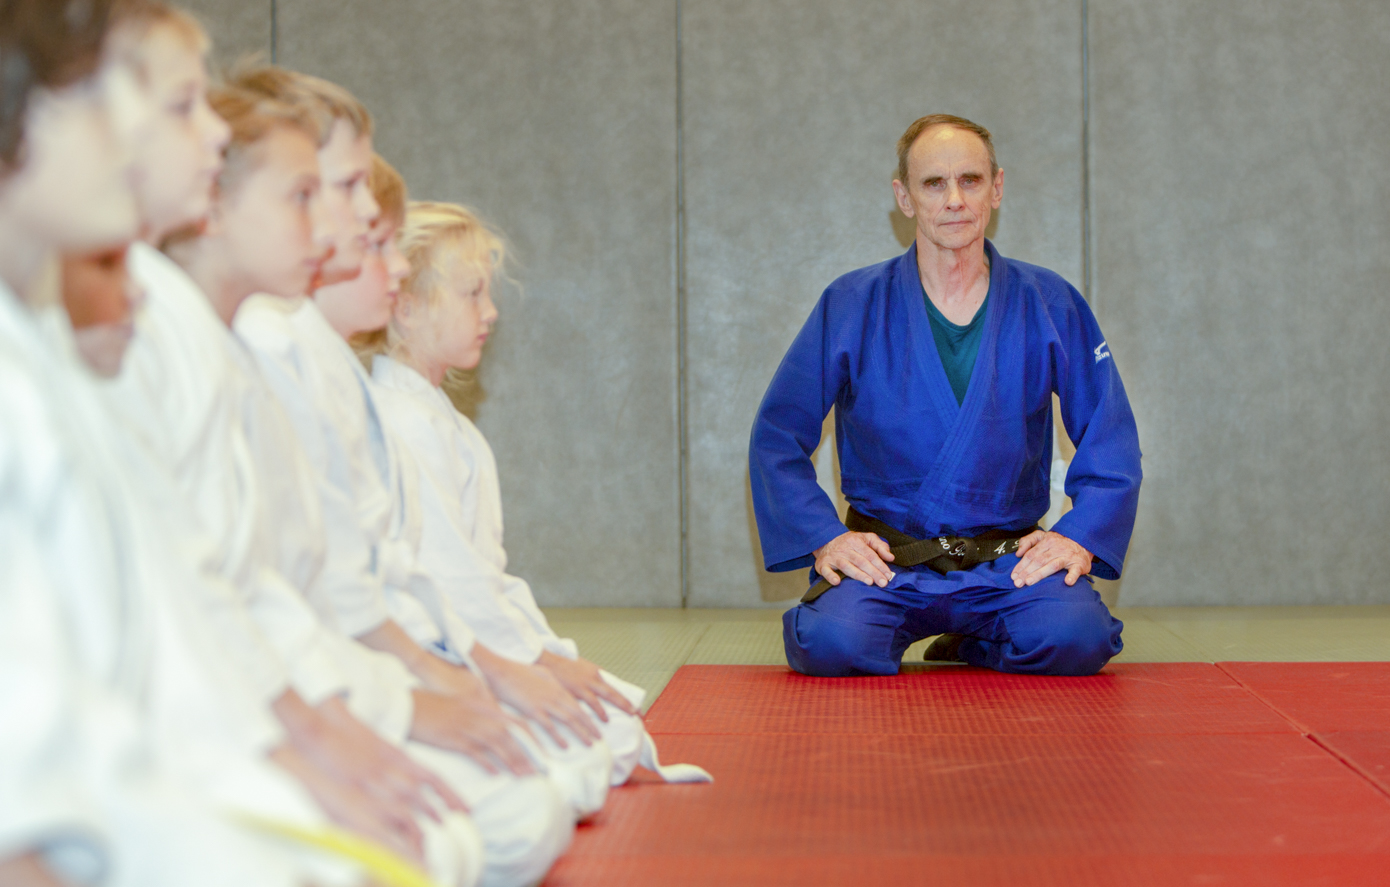 Võru spordikeskuses saab judotreener Enno Raagi käe all omandada efektseid võtteid ning lugupidamist enda ja kaaslaste vastu. Foto: AIGAR NAGEL